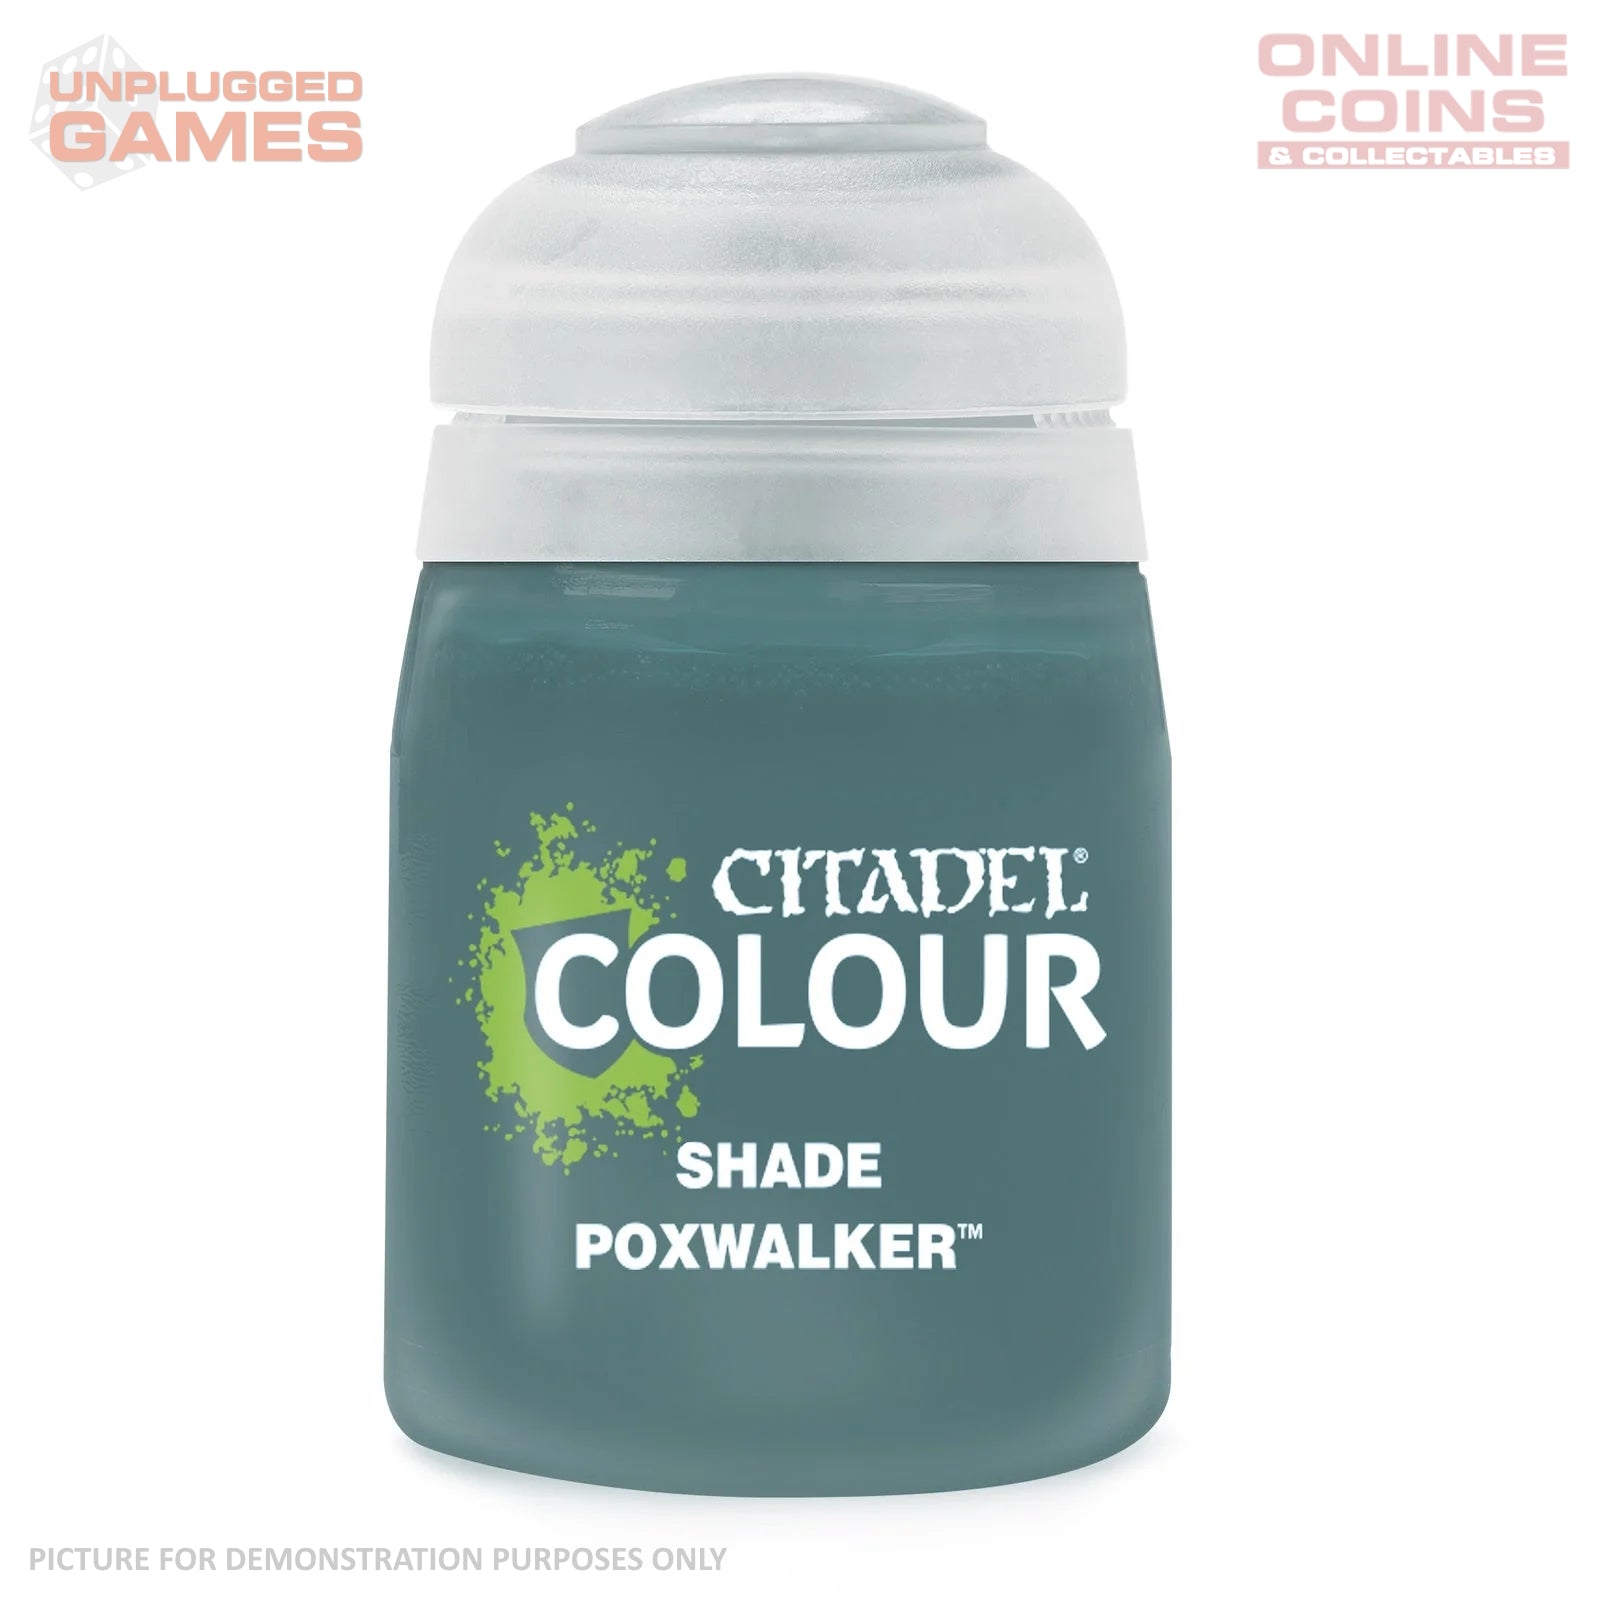 Citadel Shade - 24-30 Poxwalker